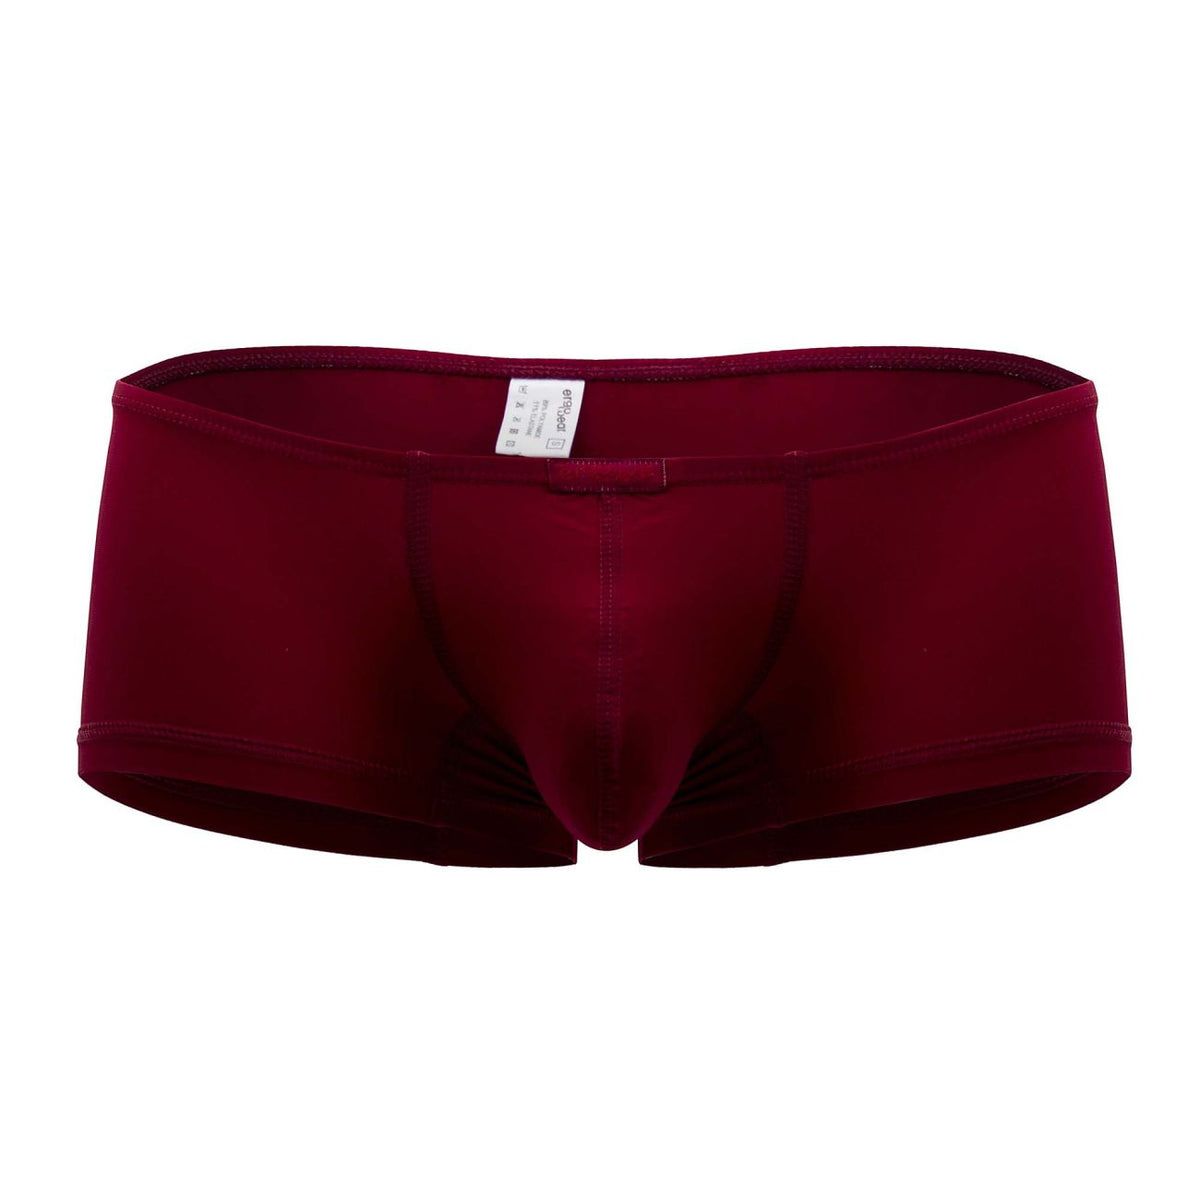 ErgoWear Underwear X4D Trunks | Shop MensUnderwear.io